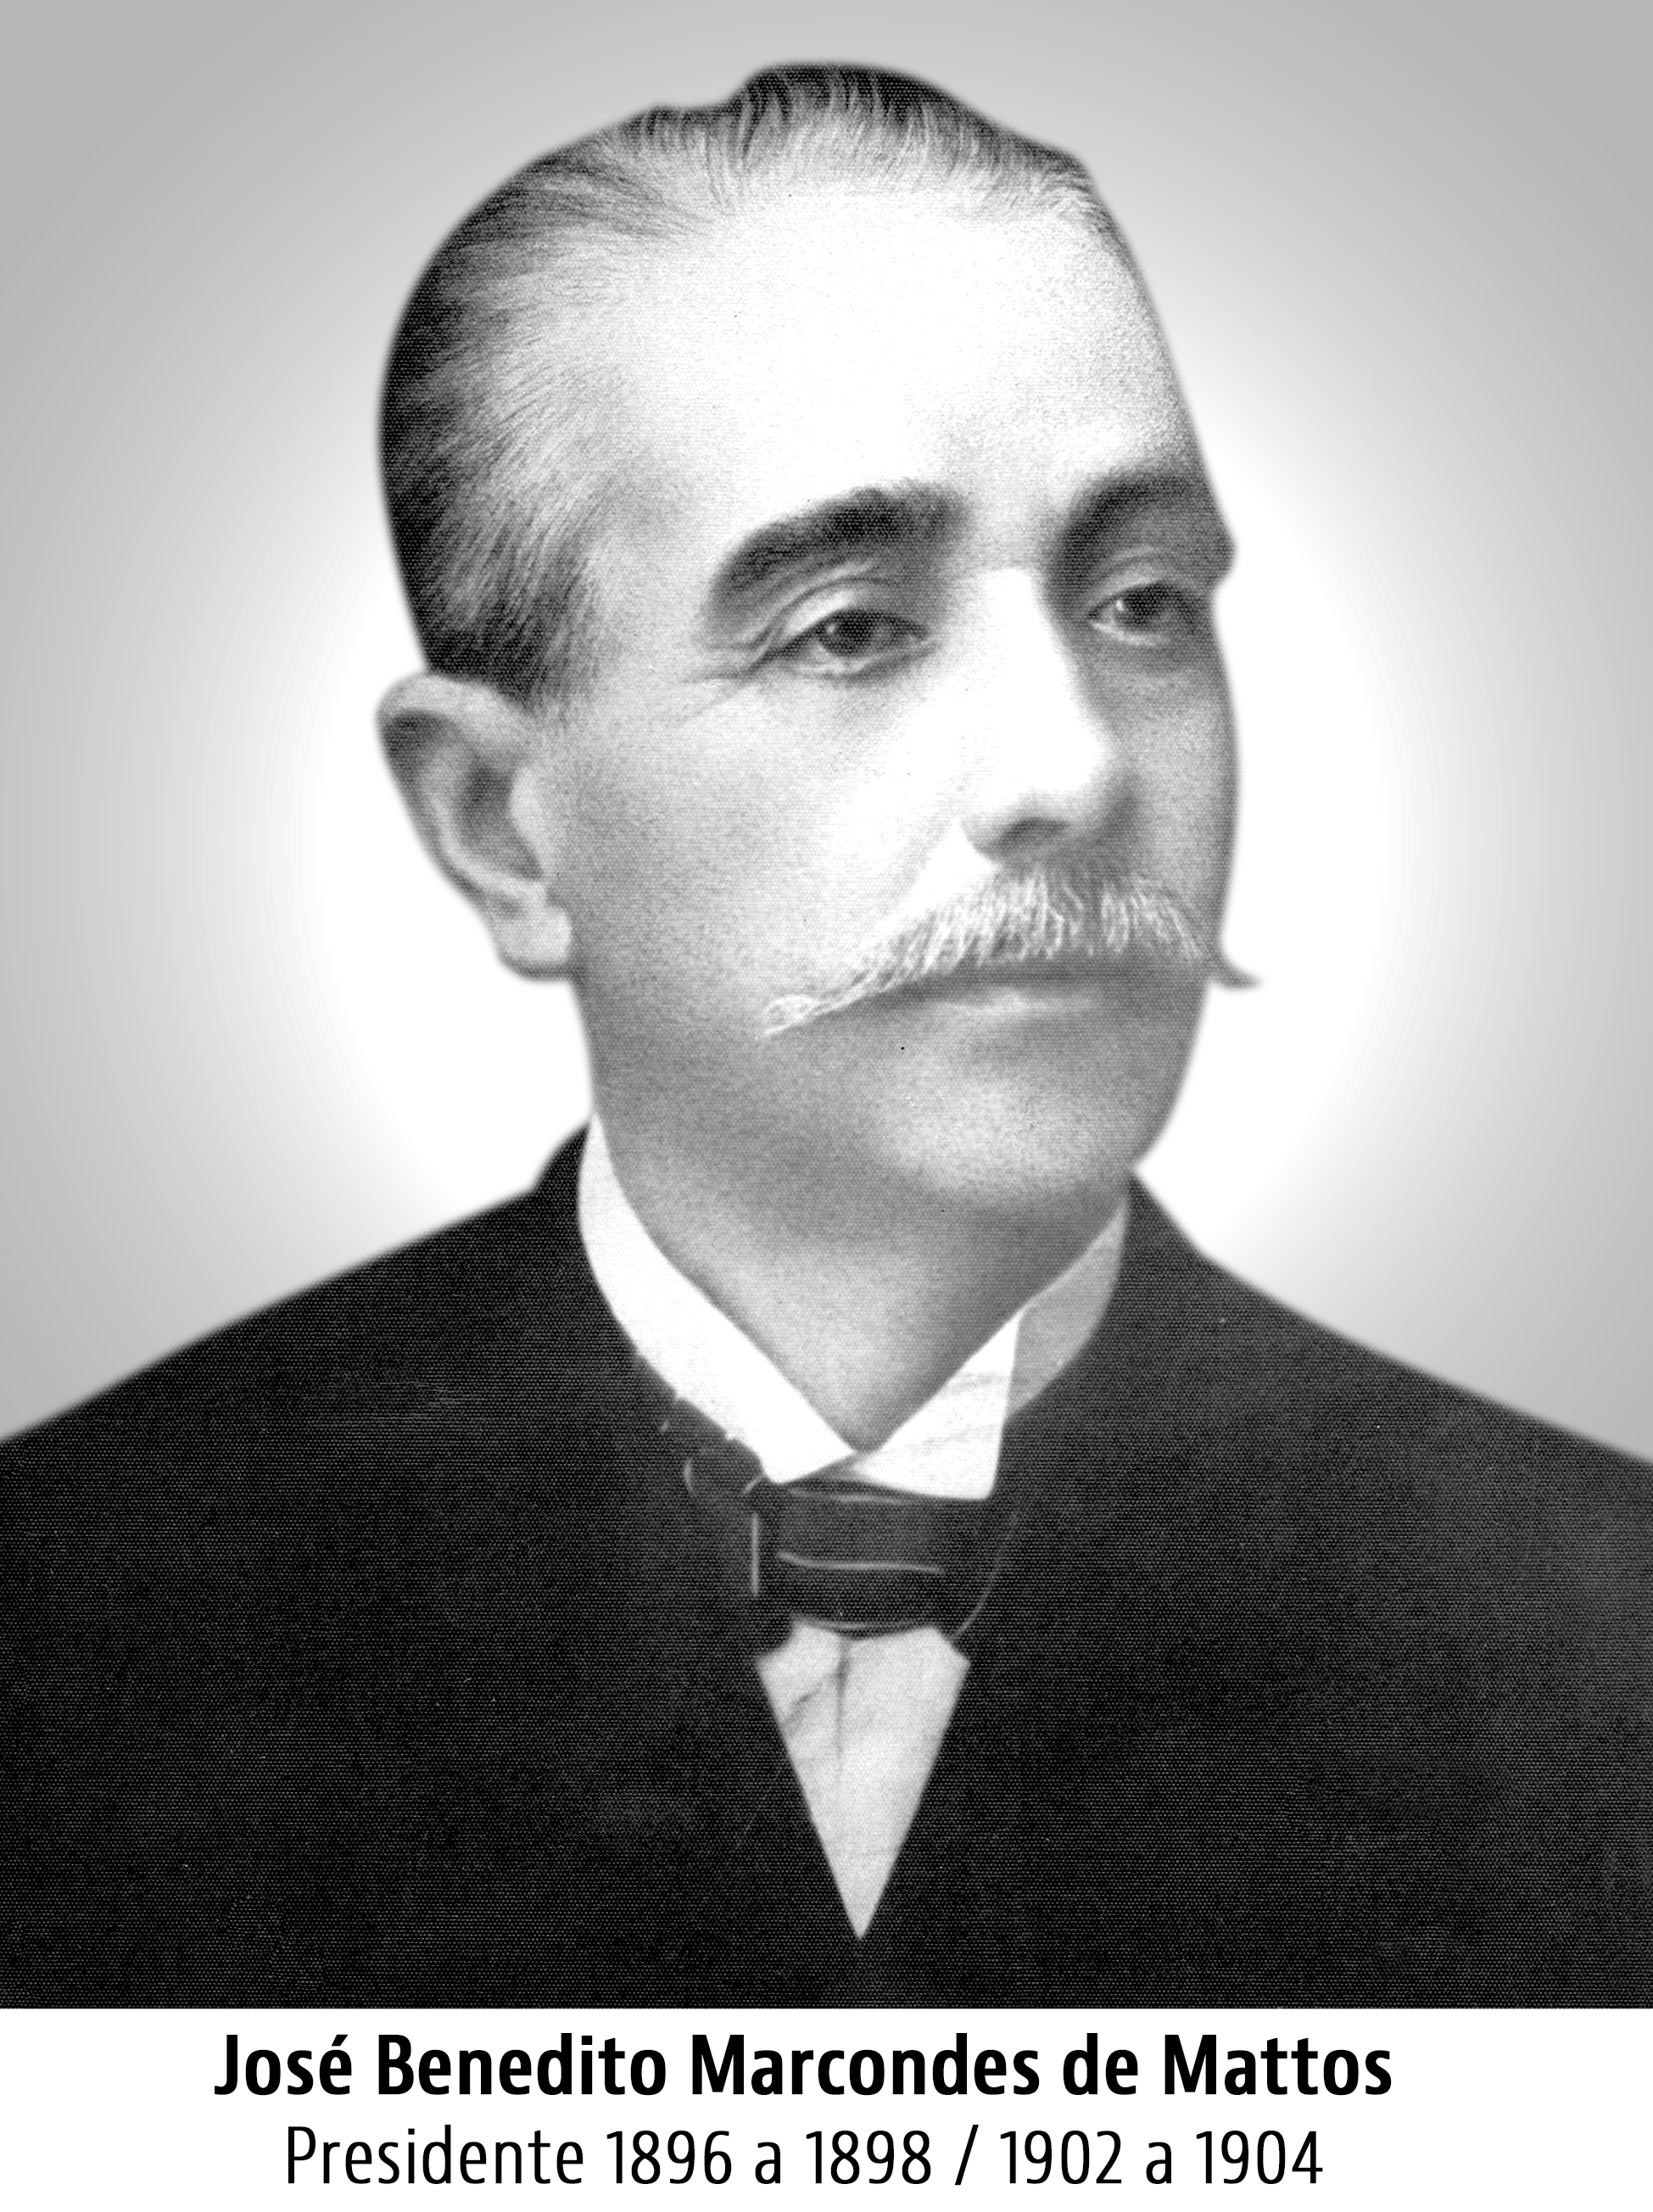 José Benedito Marcondes de Mattos